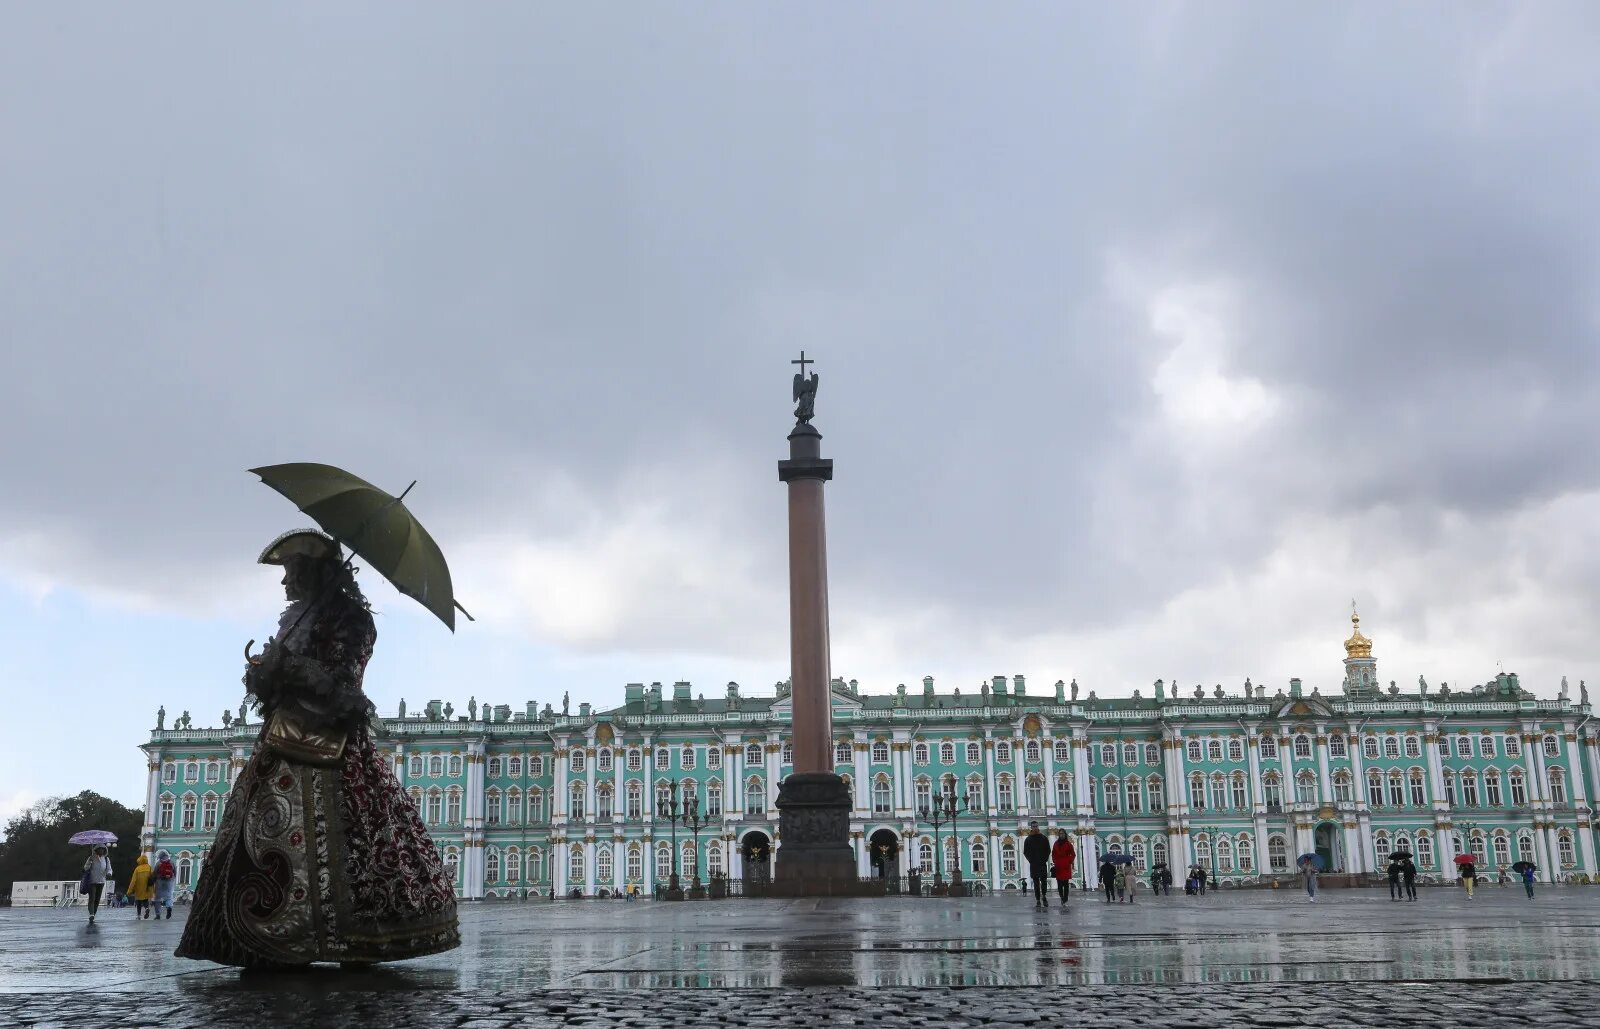 Столица дождей город. Эрмитаж дождь. Дождь Дворцовая. Лучшие места Питера. Петербург дождь Эрмитаж.